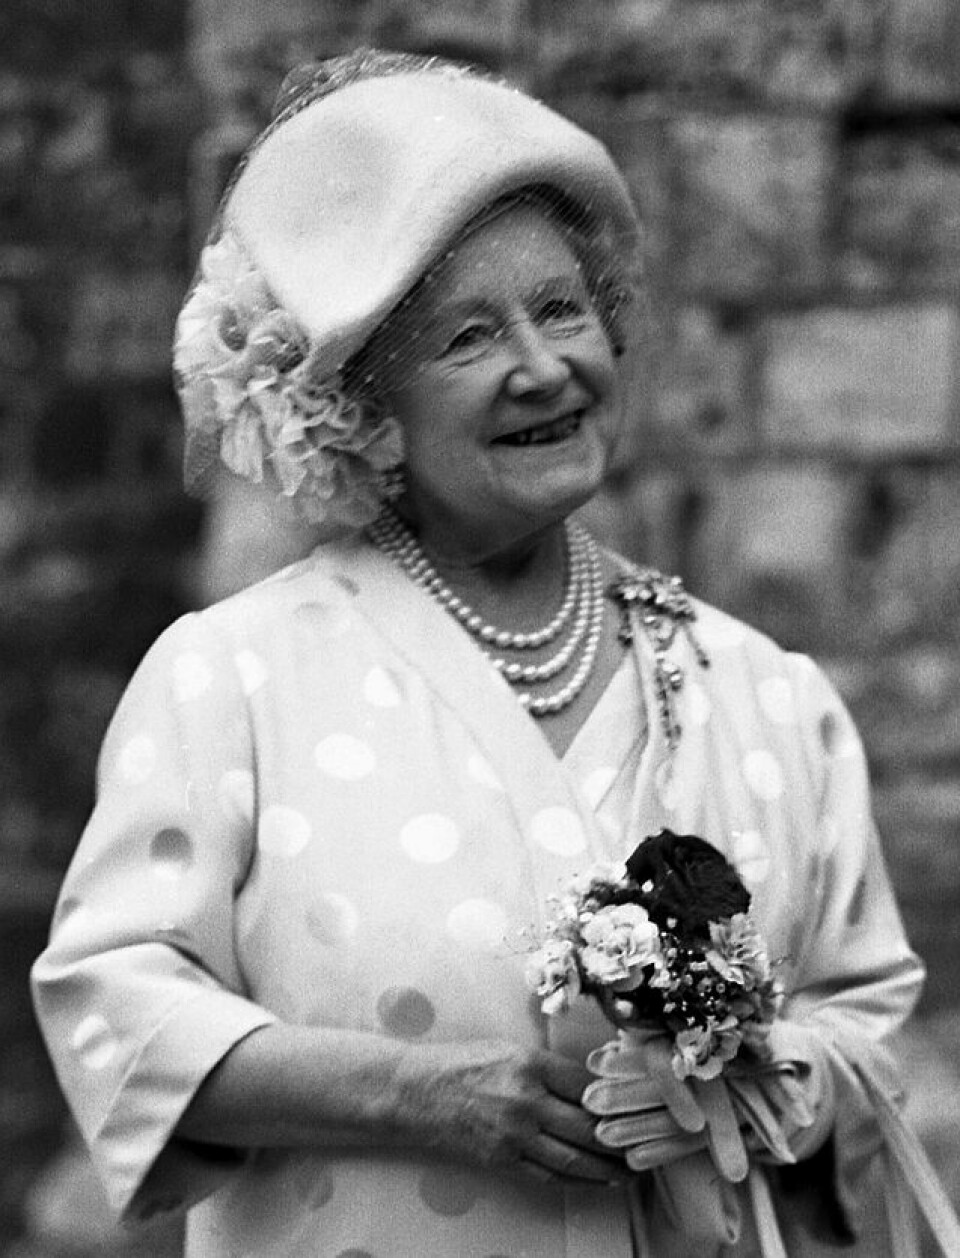 Dronning Elizabeths mor, Queen Elizabeth the Queen Mother, døde i 2002, 101 år gammel. Folk følte sympati for en dronning i sorg.